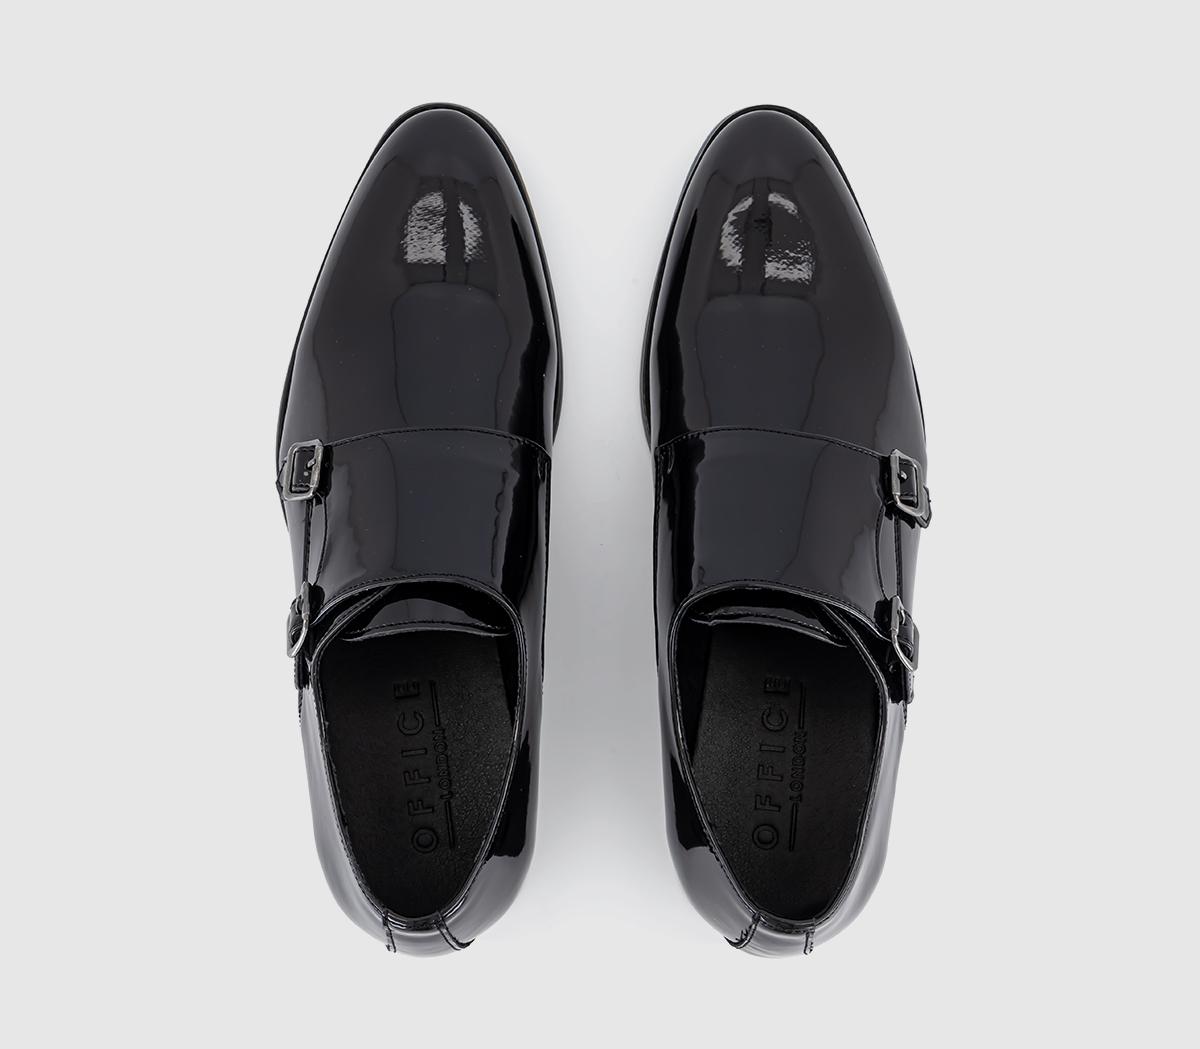 OFFICE Marty Patent Monk Black Patent - Men’s Smart Shoes